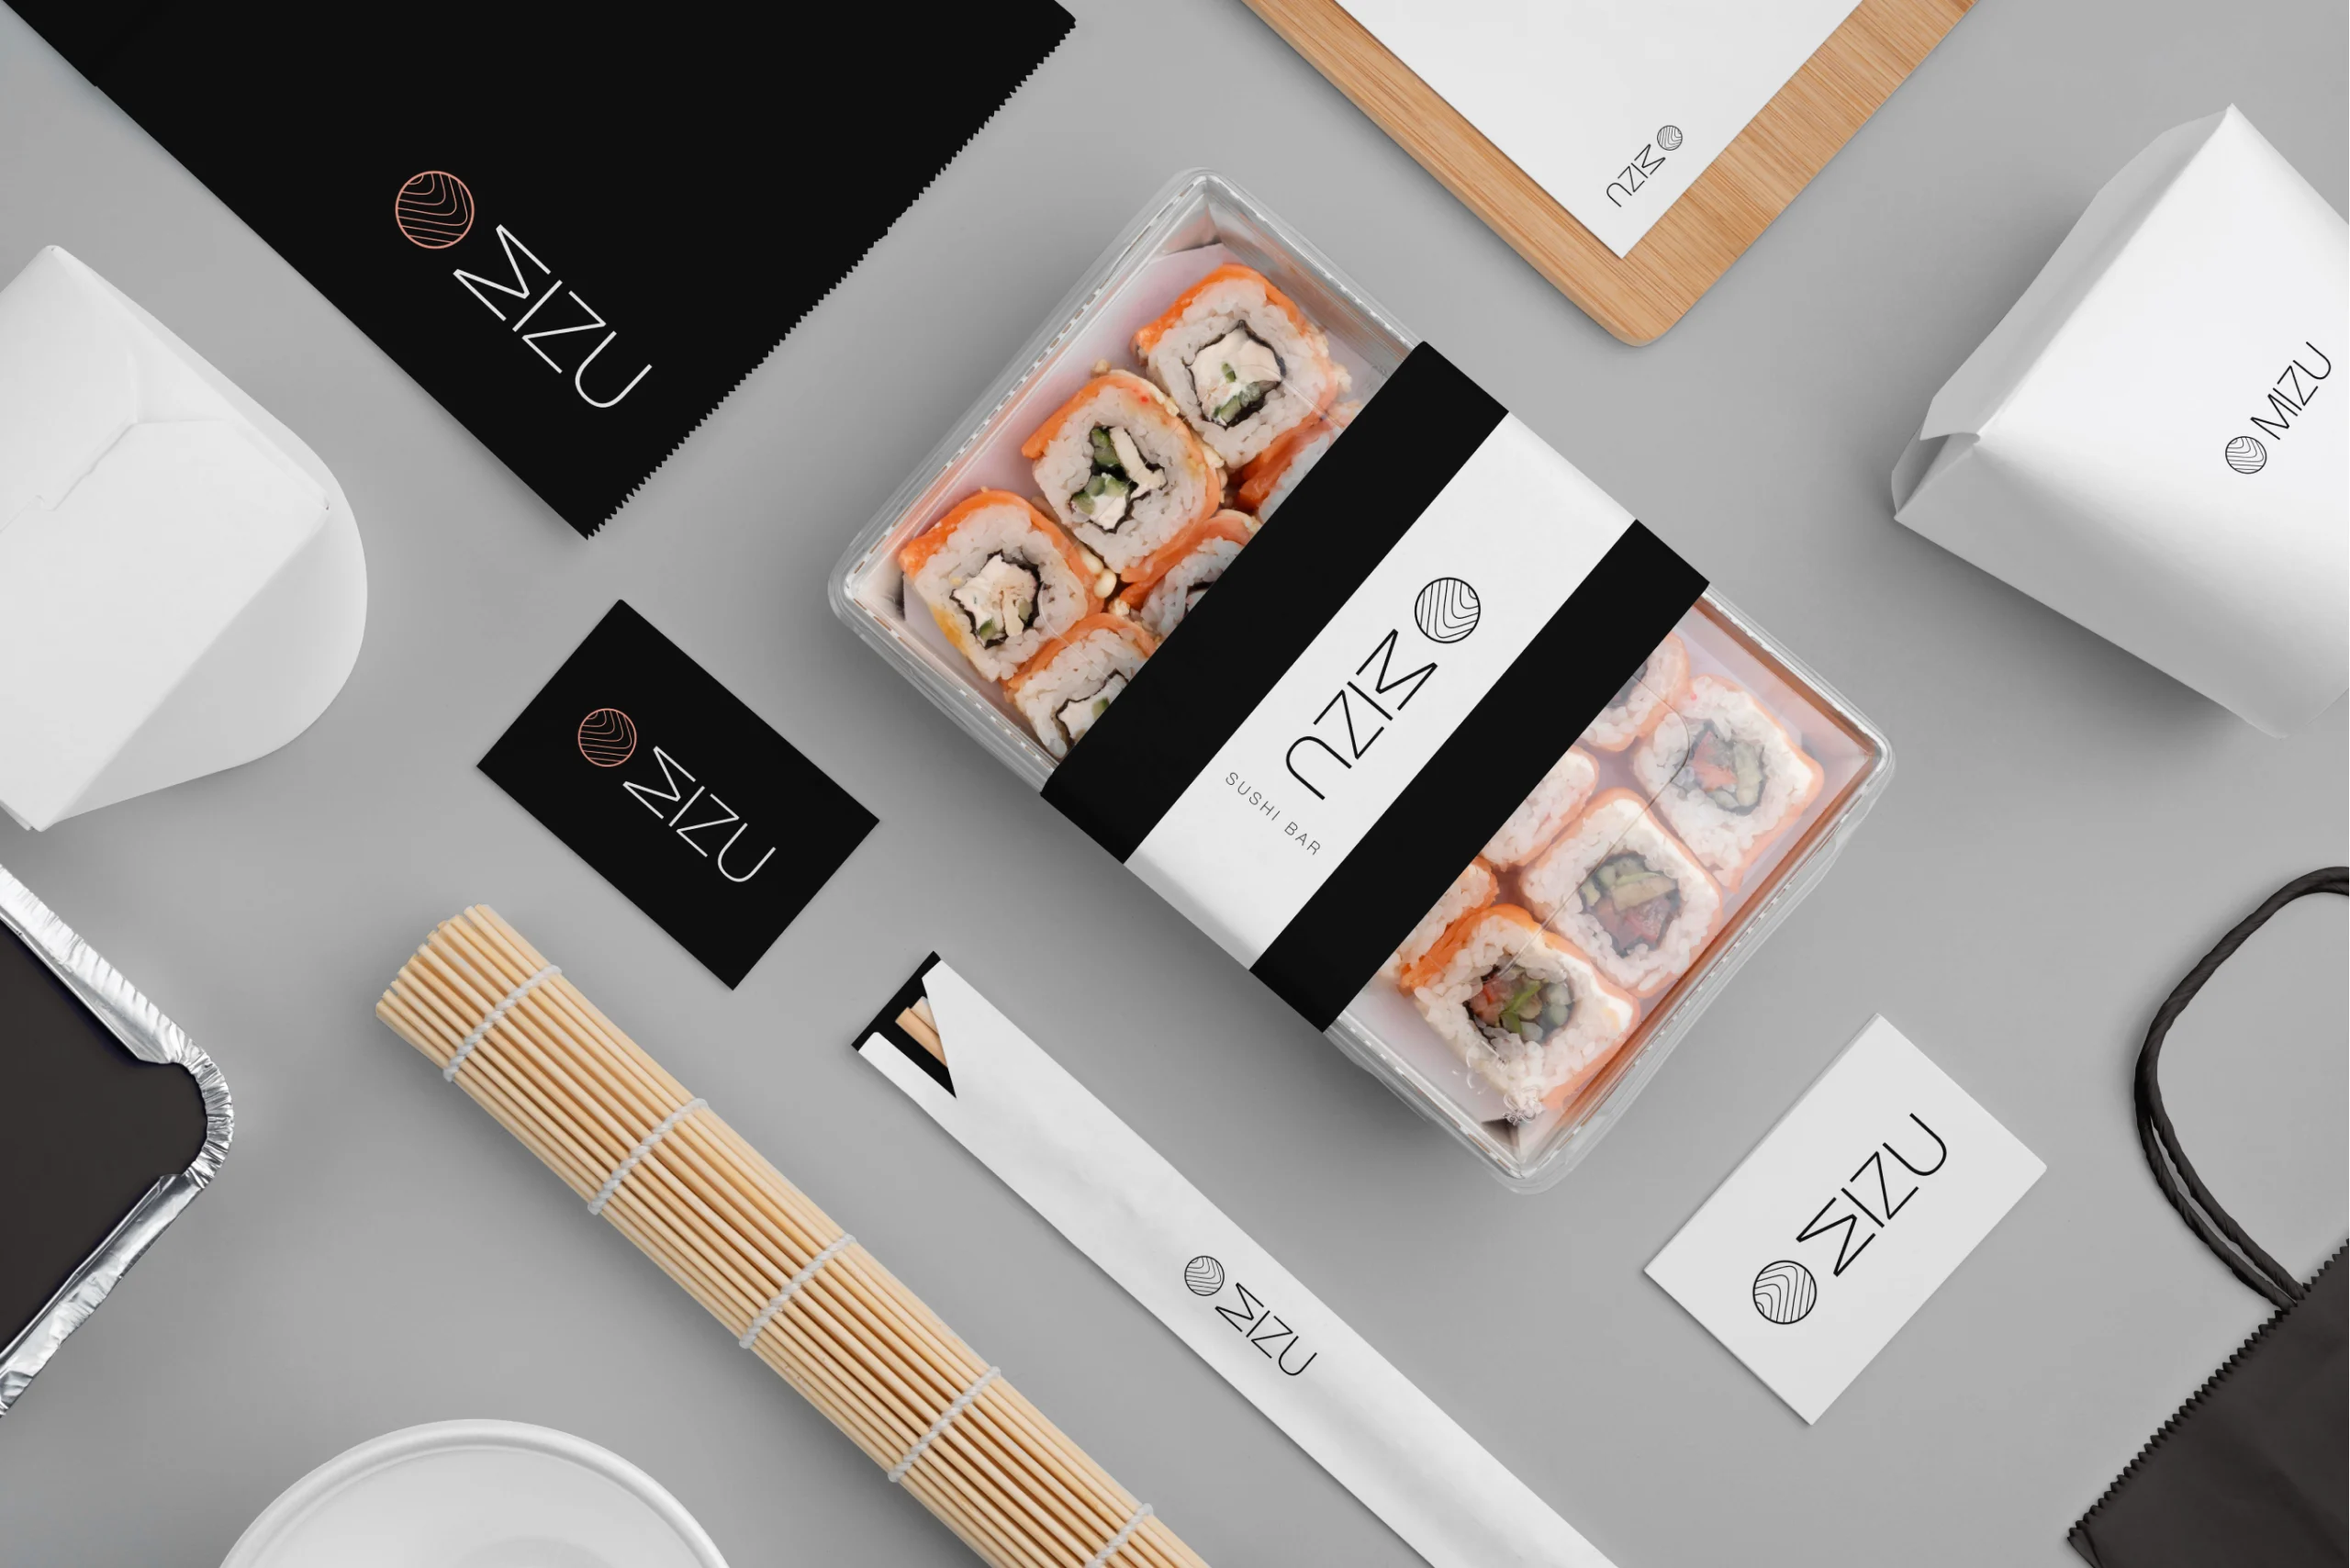 Sushi box and branding